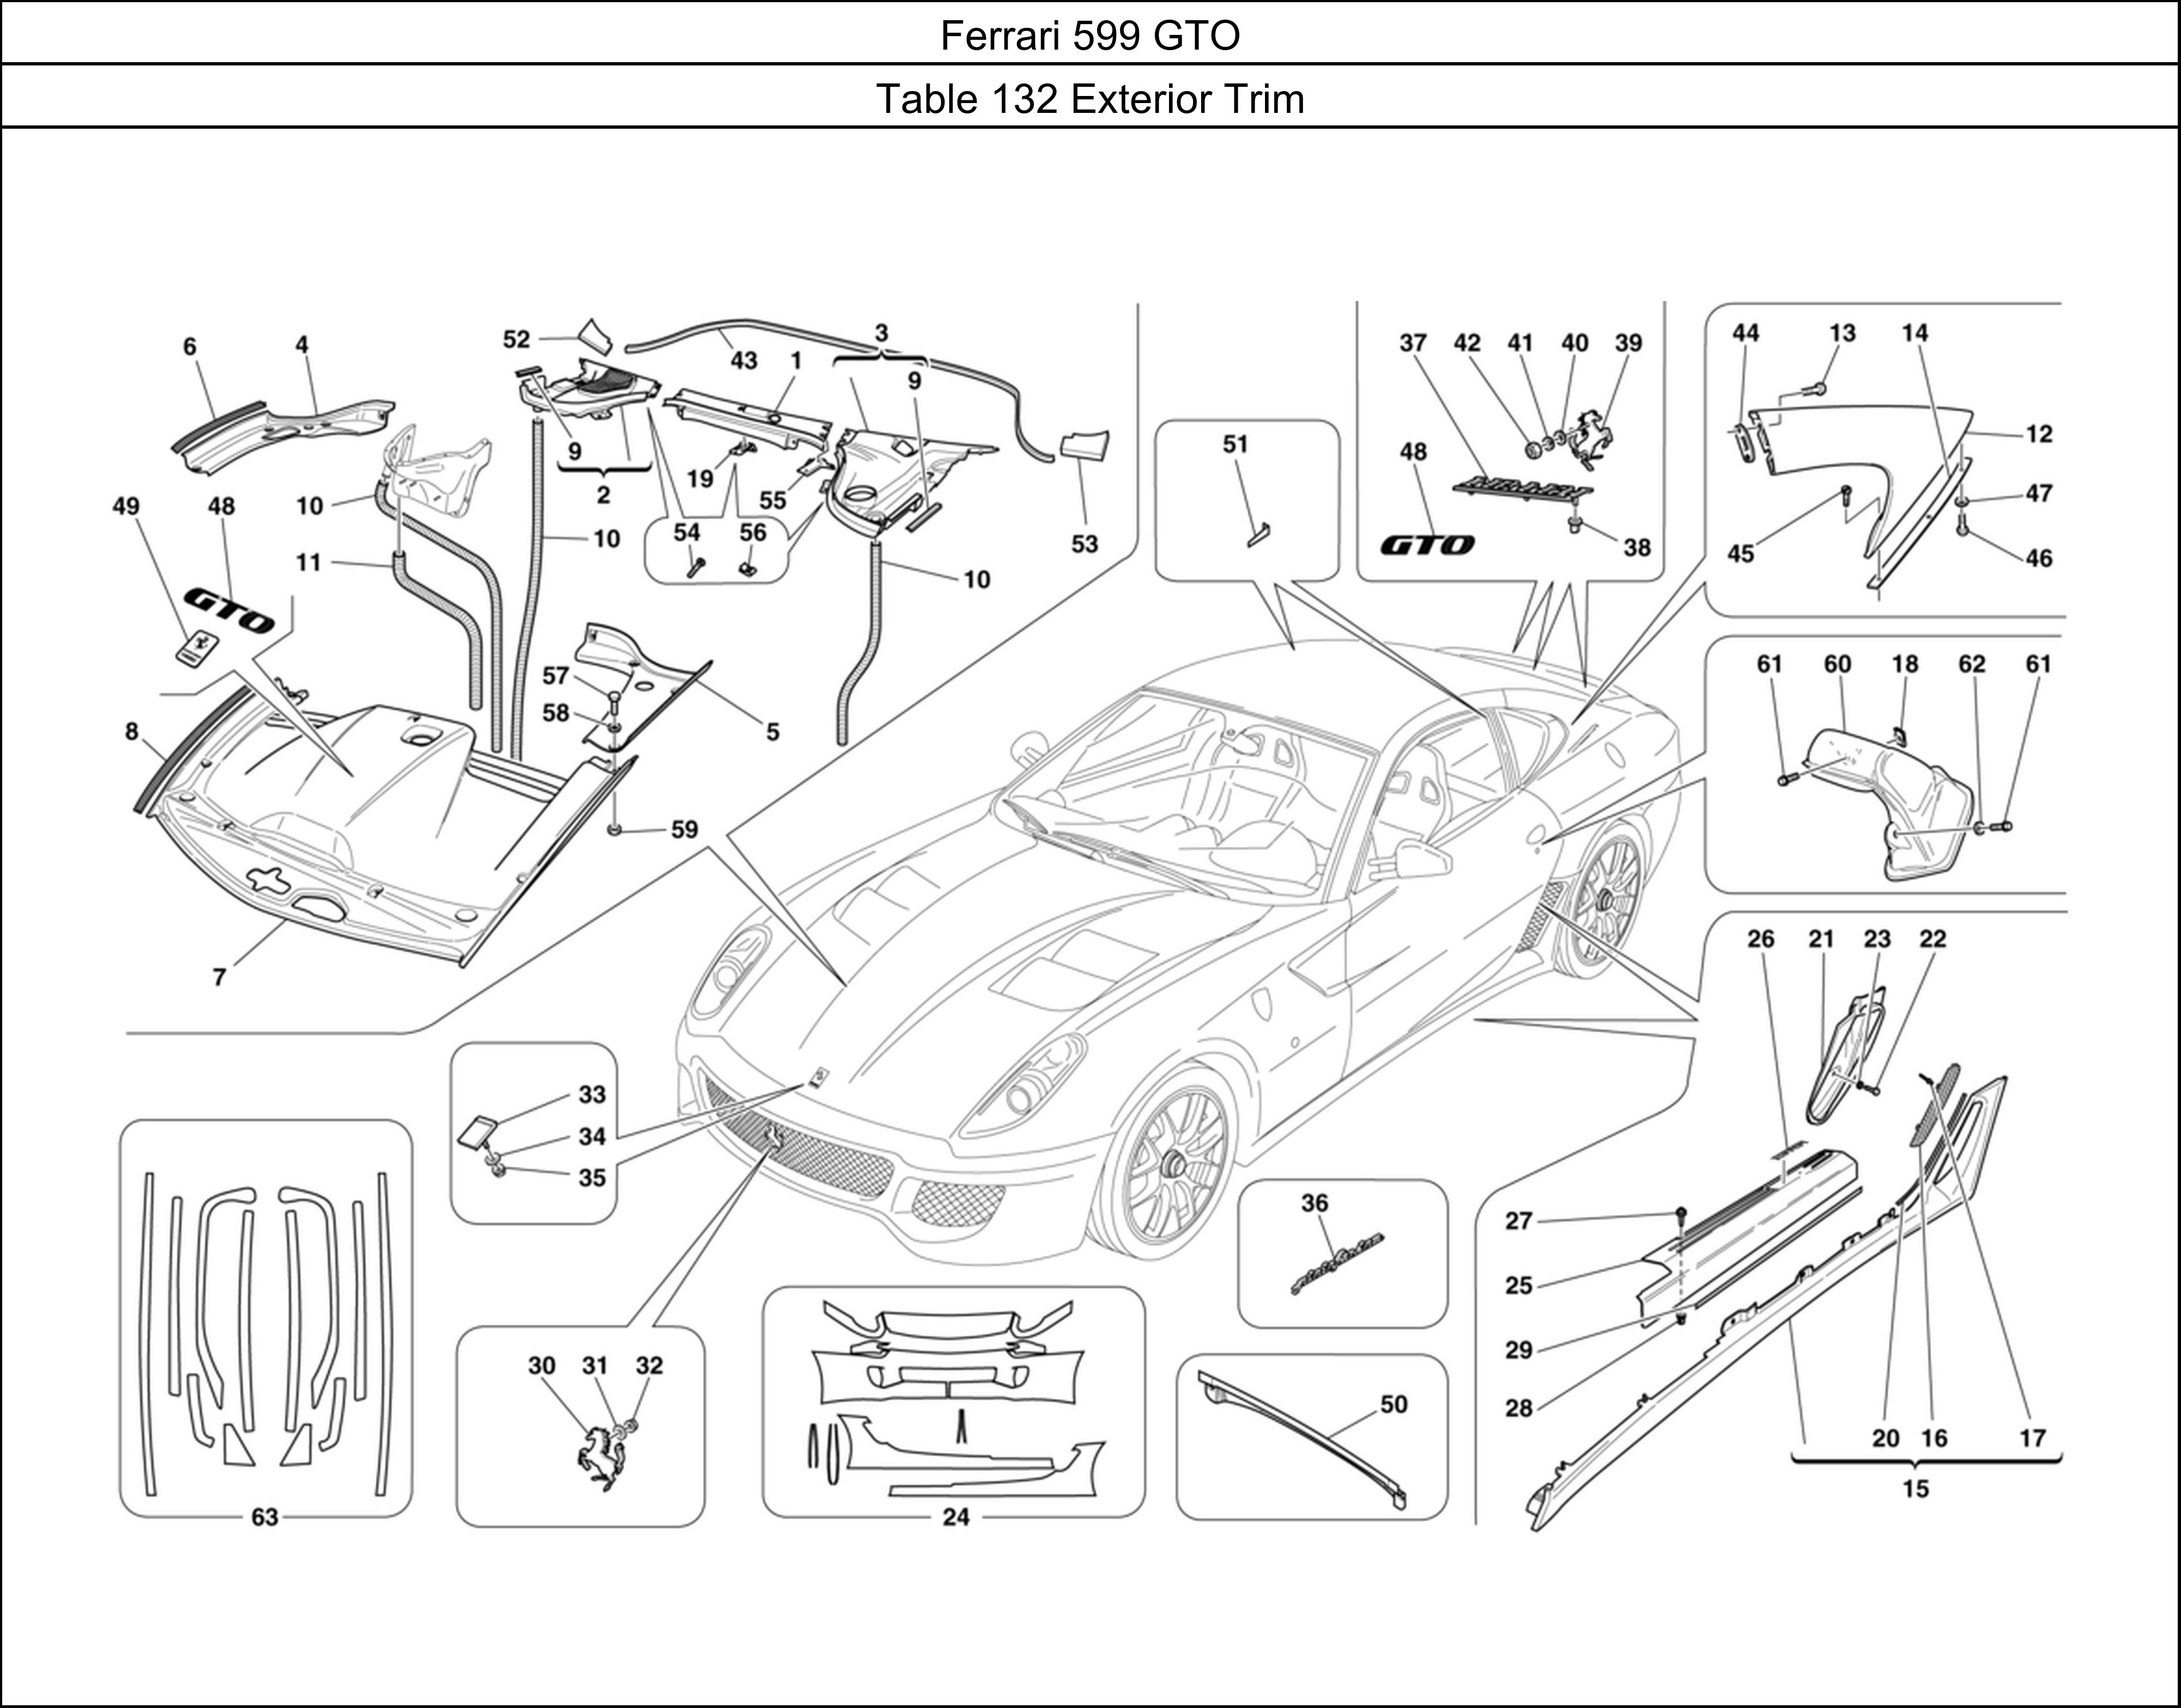 Ferrari Parts Ferrari 599 GTO Table 132 Exterior Trim